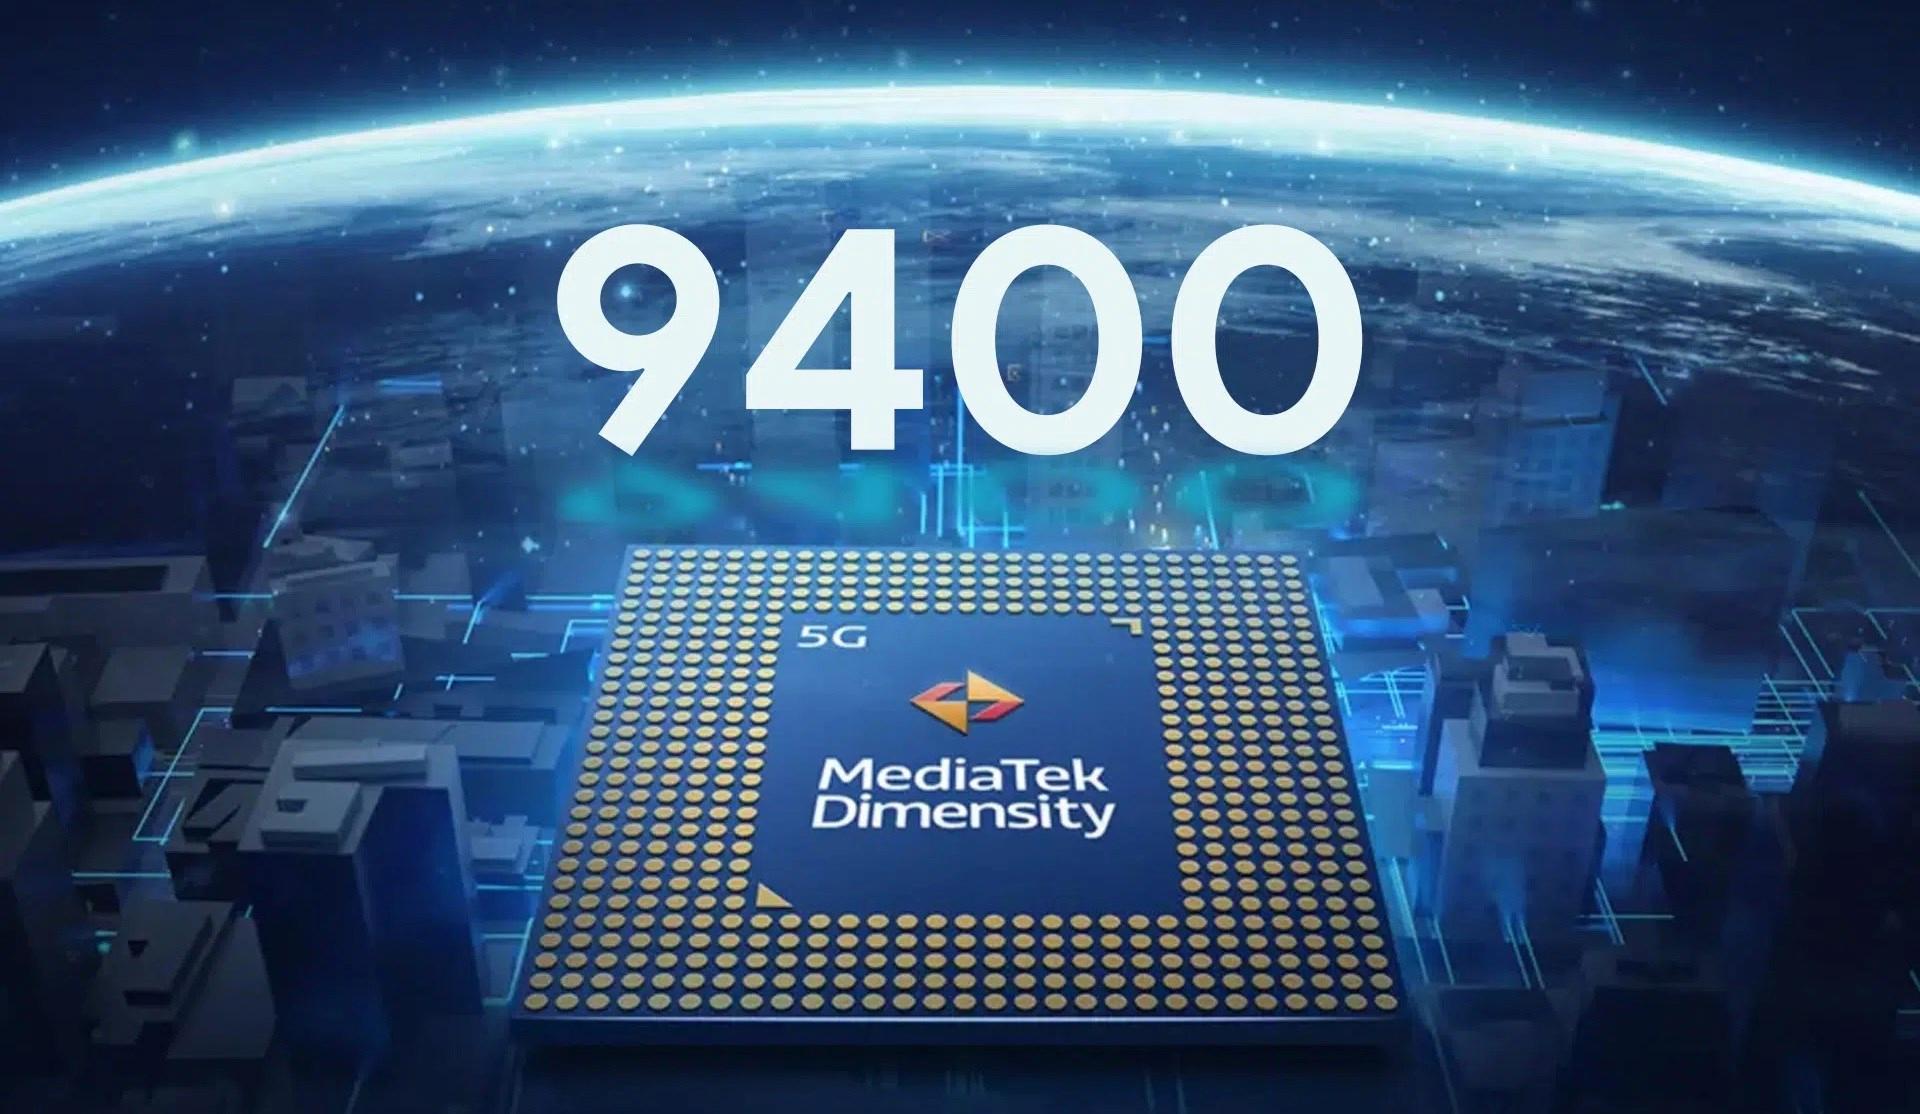 MediaTek Dimensity 9400’ün temel özellikleri açıklandı